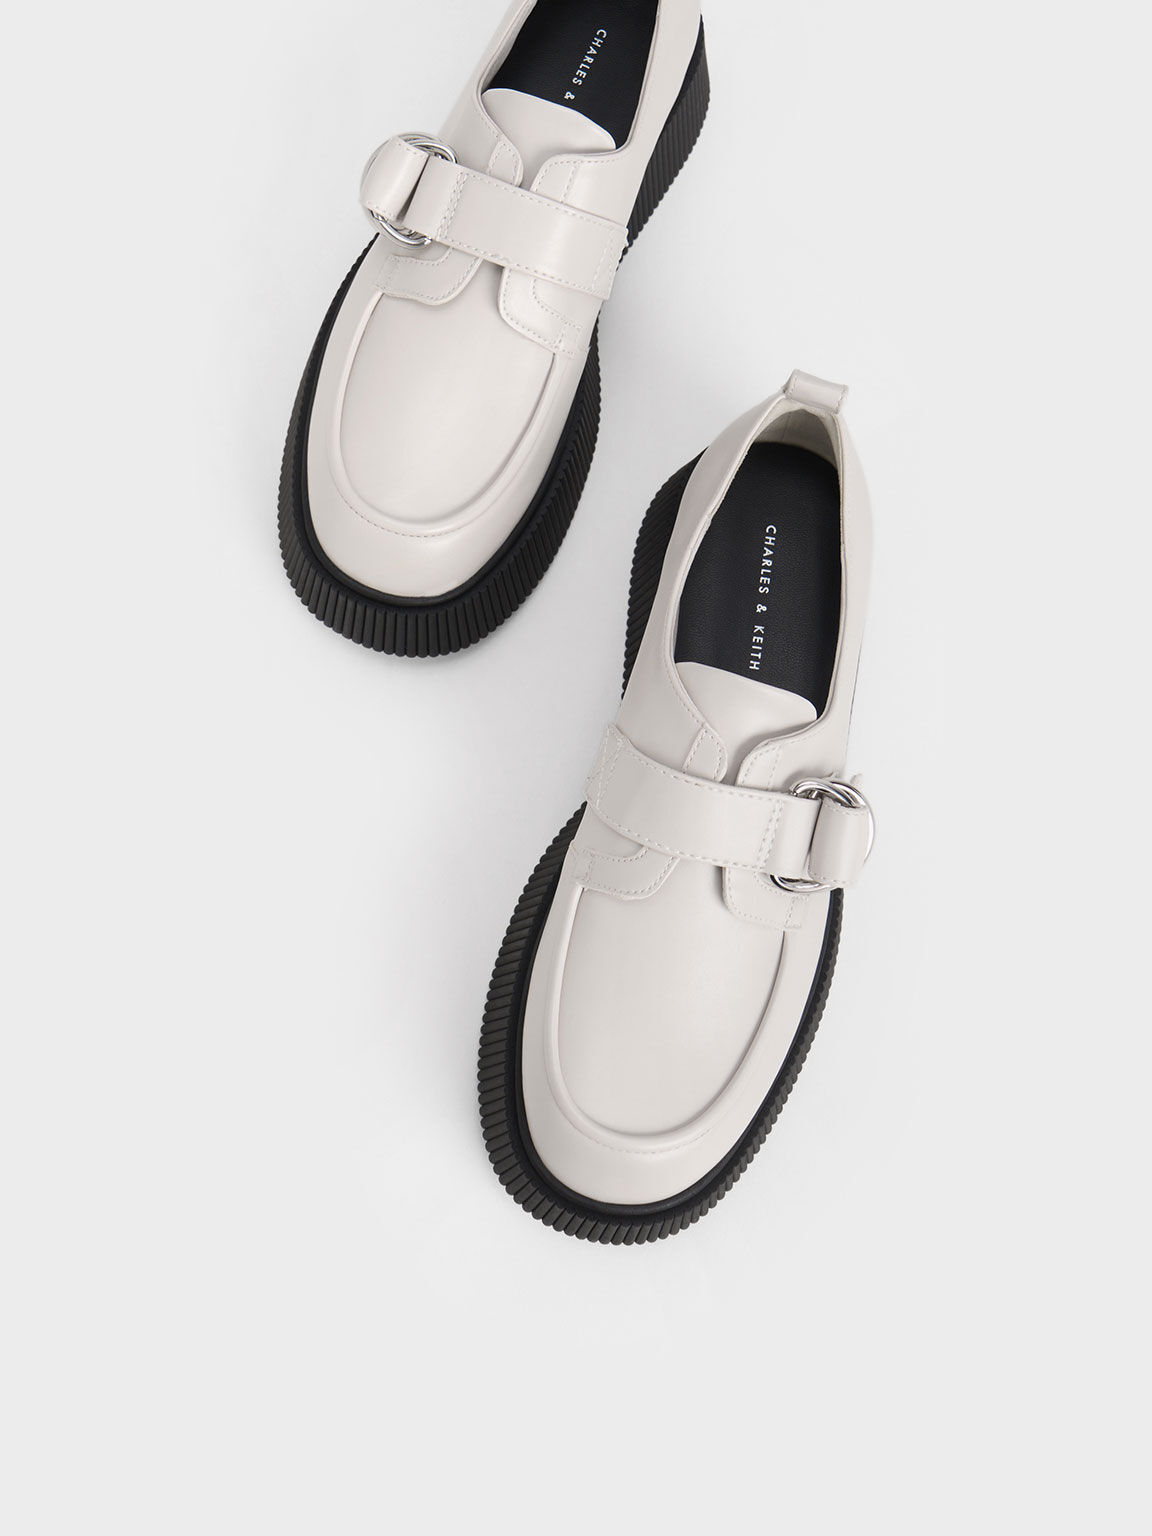 Sepatu Loafers Platform Buckled, White, hi-res